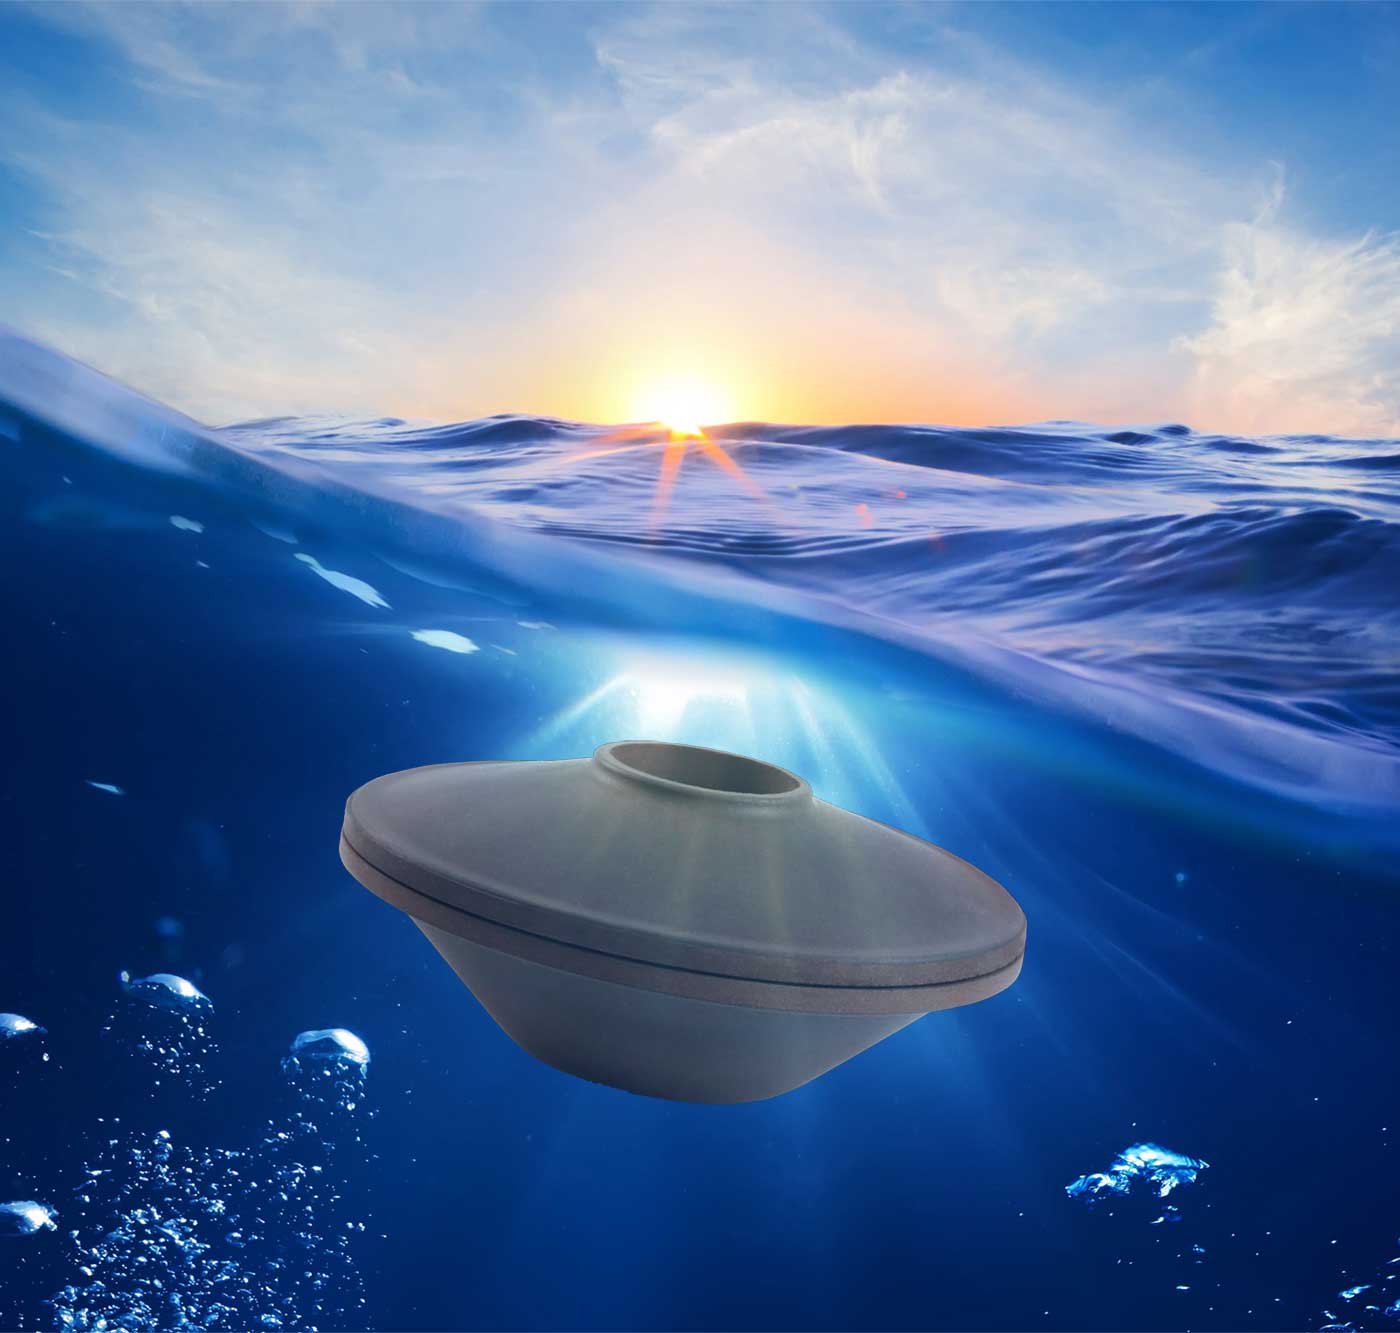 Urna koffie biosoluble en el mar